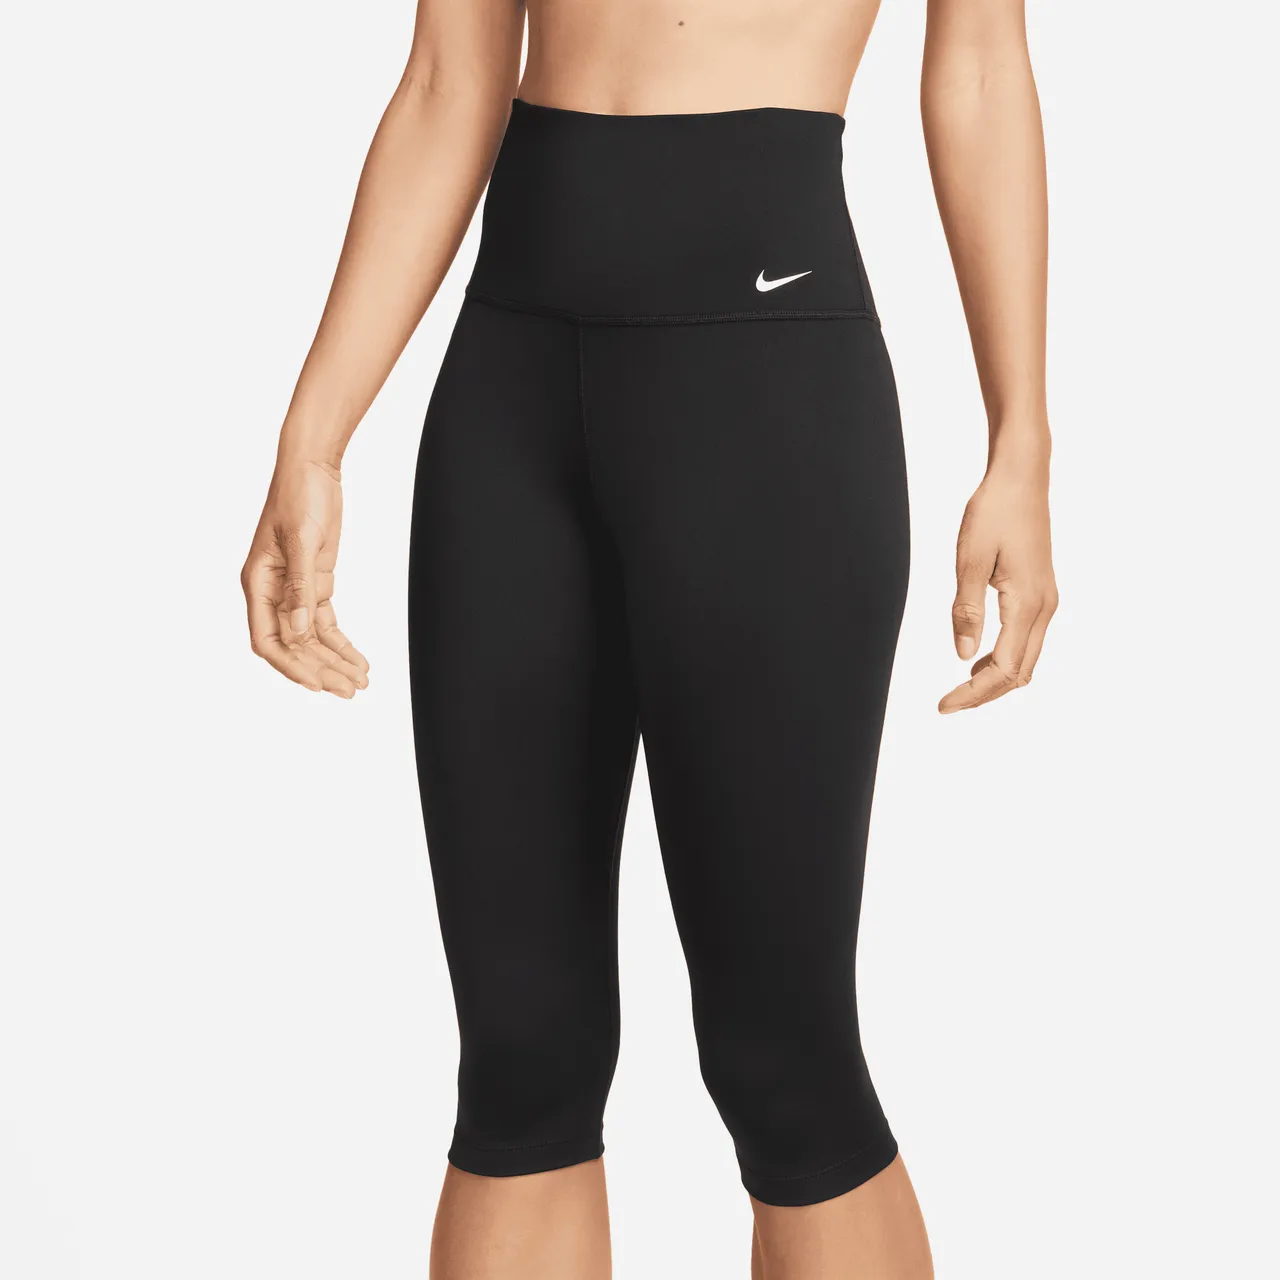 Nike One Women's High-Waisted Capri Leggings - Black - Polyester